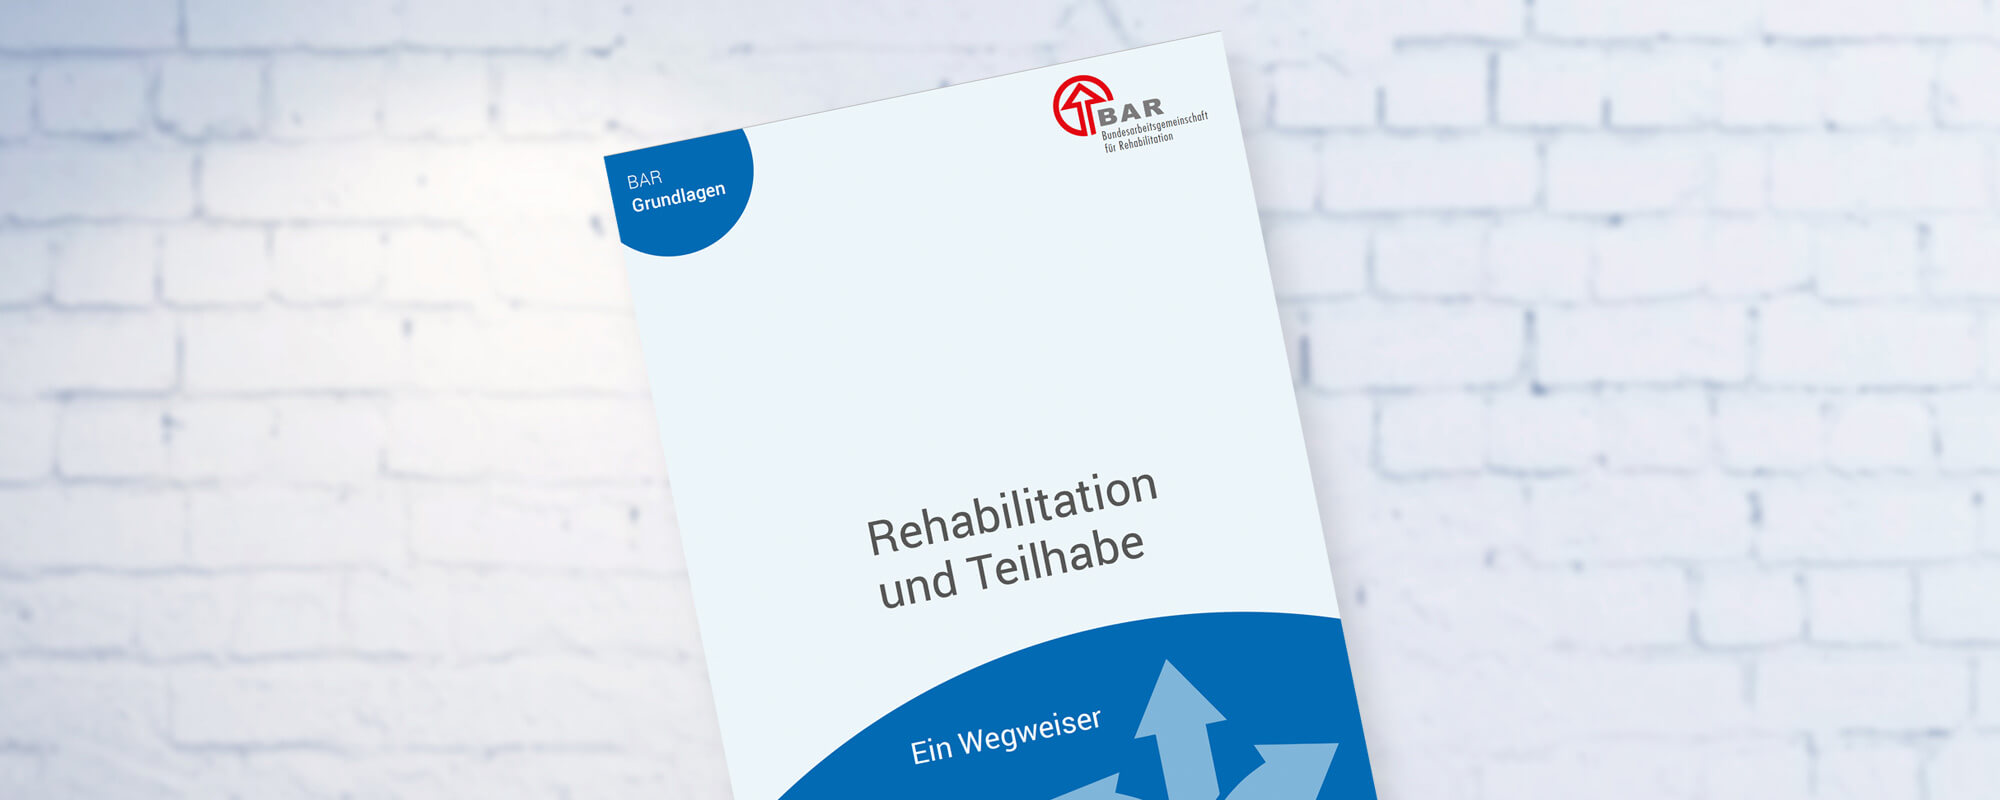 Titelbild der Broschüre "Rehabilitation und Teilhabe" der Bundesarbeitsgemeinschaft für Rehabilitation e. V. (BAR)